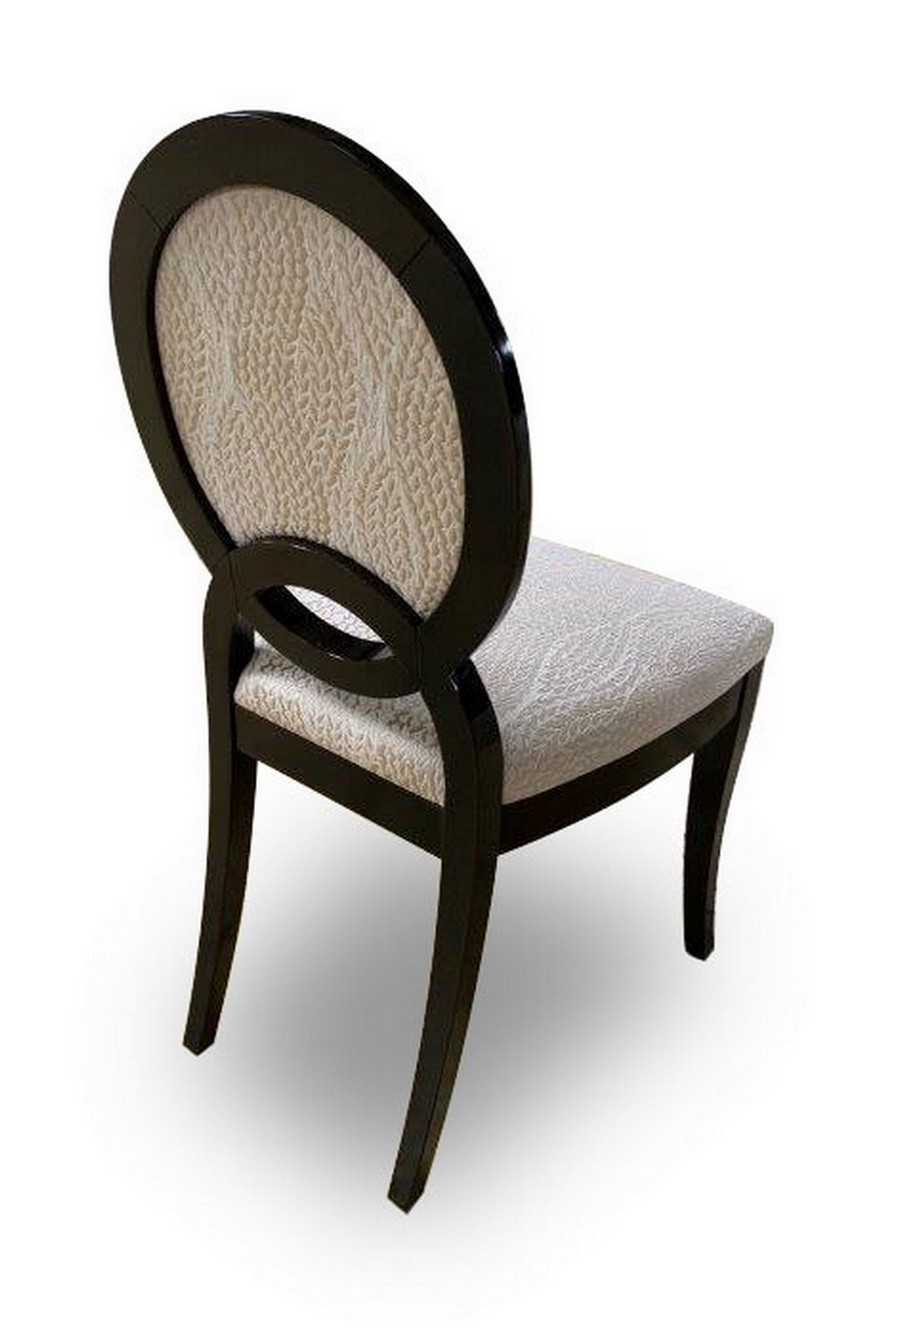 Modern luxury chair